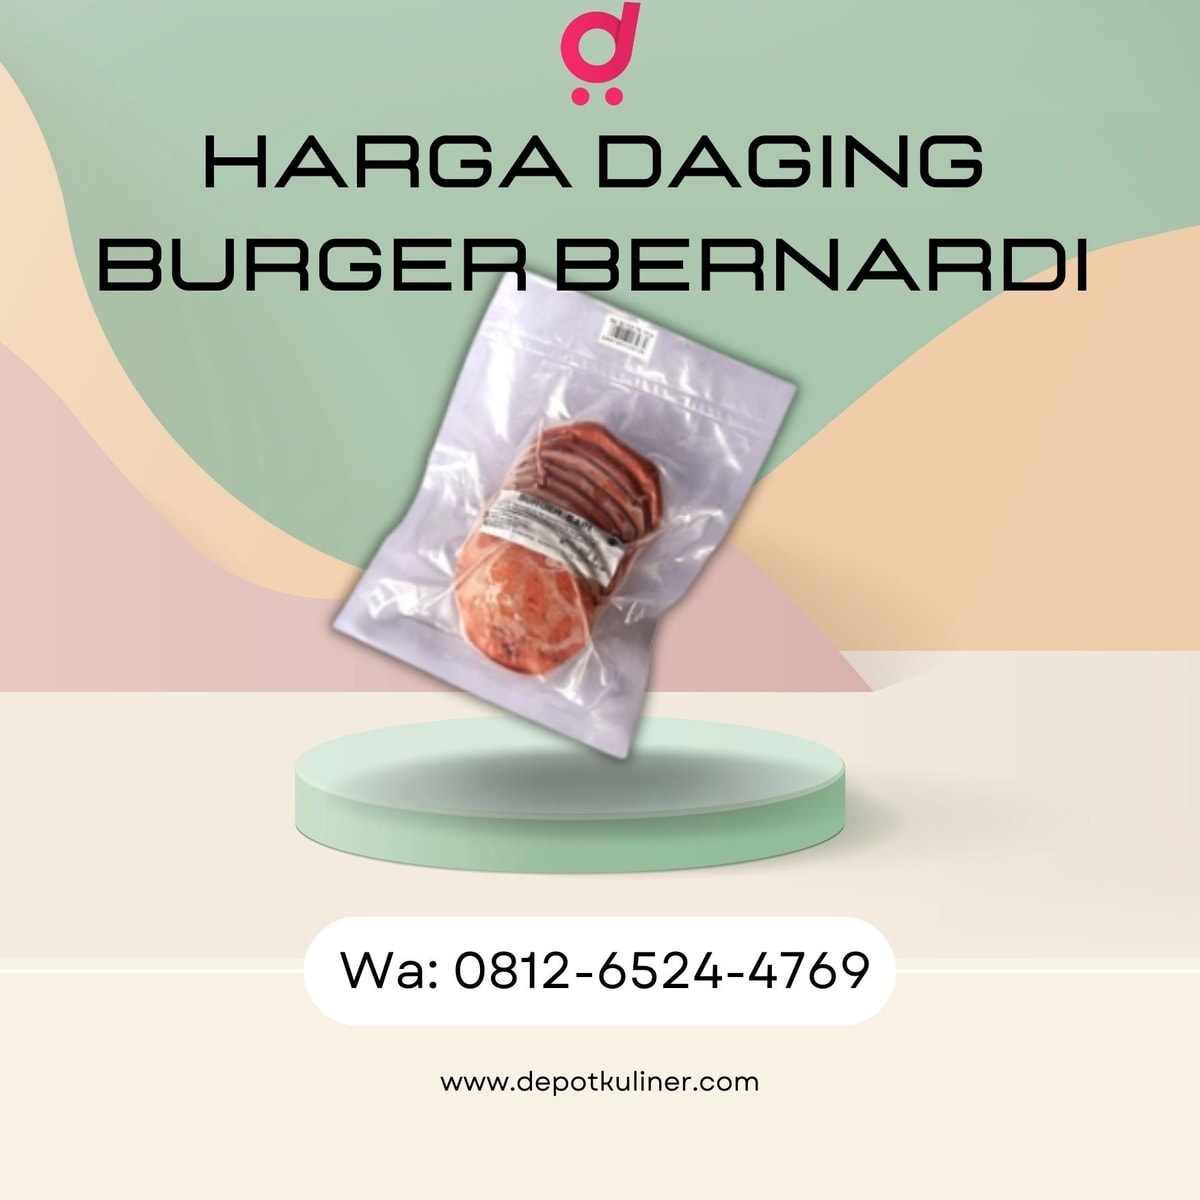 HARGA IRIT, Call 0812-6524-4769, Harga Daging Burger Bernardi